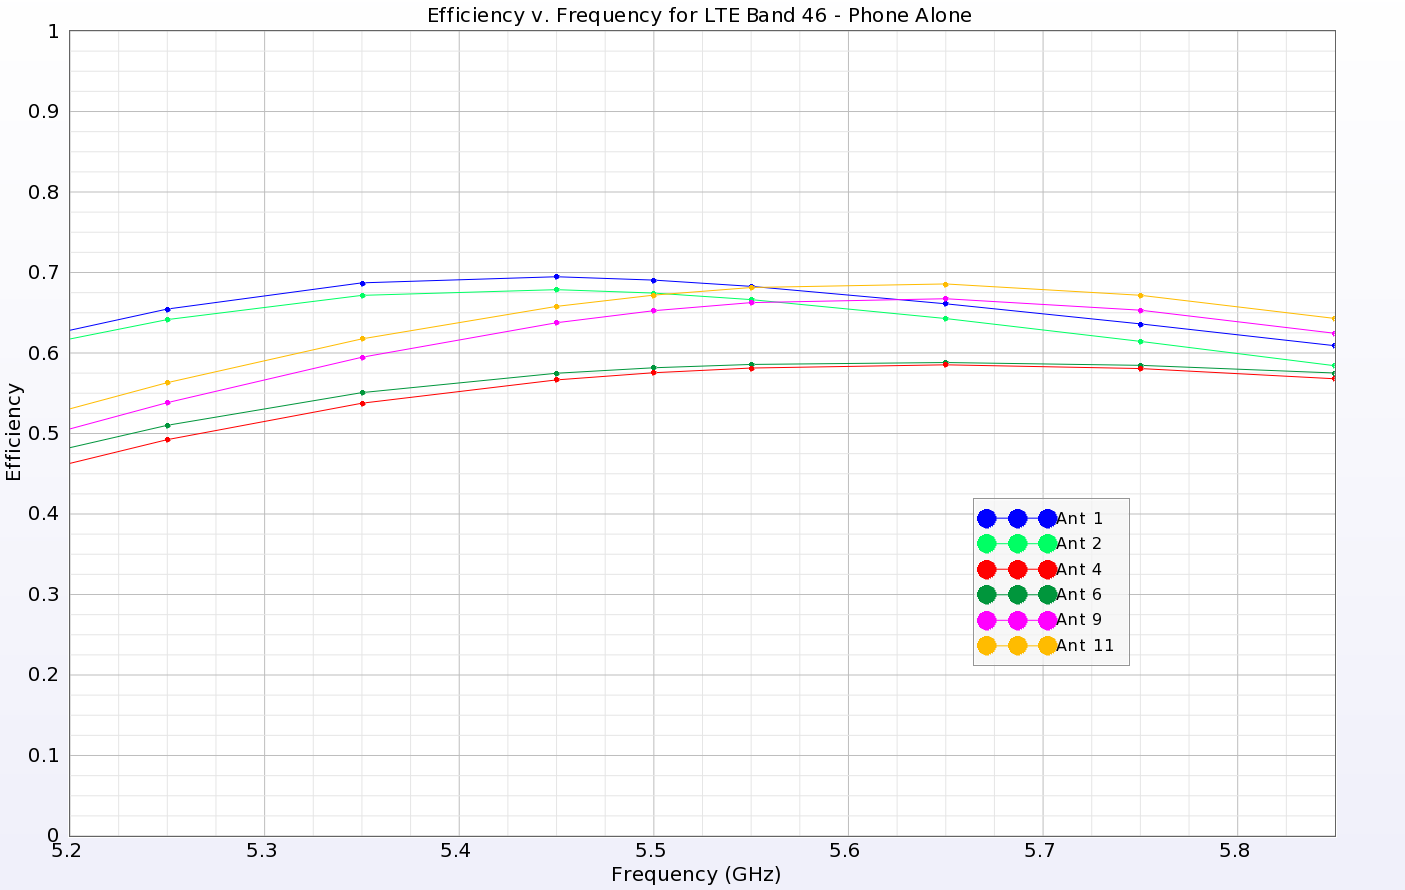 Figura 9: Las eficiencias de todas las antenas en la banda superior LTE 46 son superiores al 50% aproximadamente y muestran un buen rendimiento.